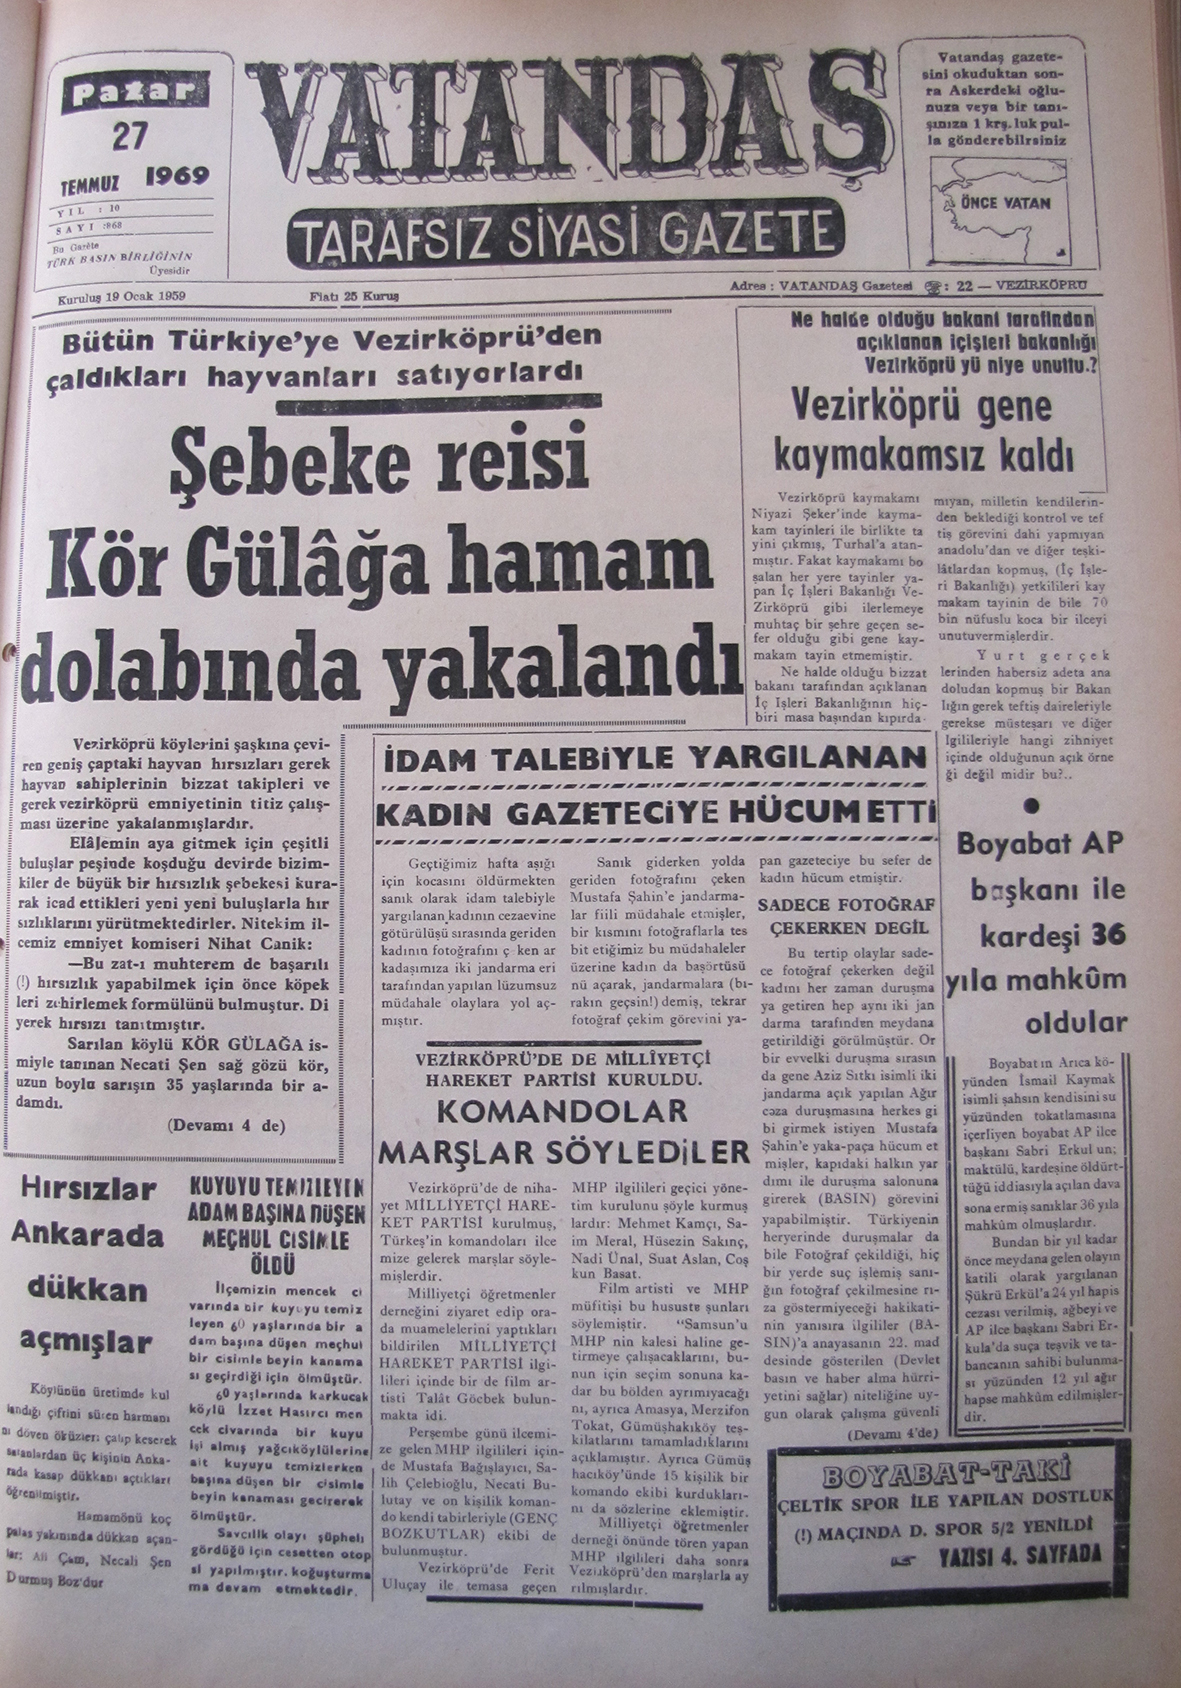 Bütün Türkiye’ye Vezirköprü’den çaldıkları hayvanları satıyorlardı. Şebeke Reisi Kör Gülağa Hamam Dolabında Yakalandı 27 Temmuz 1969 Pazar